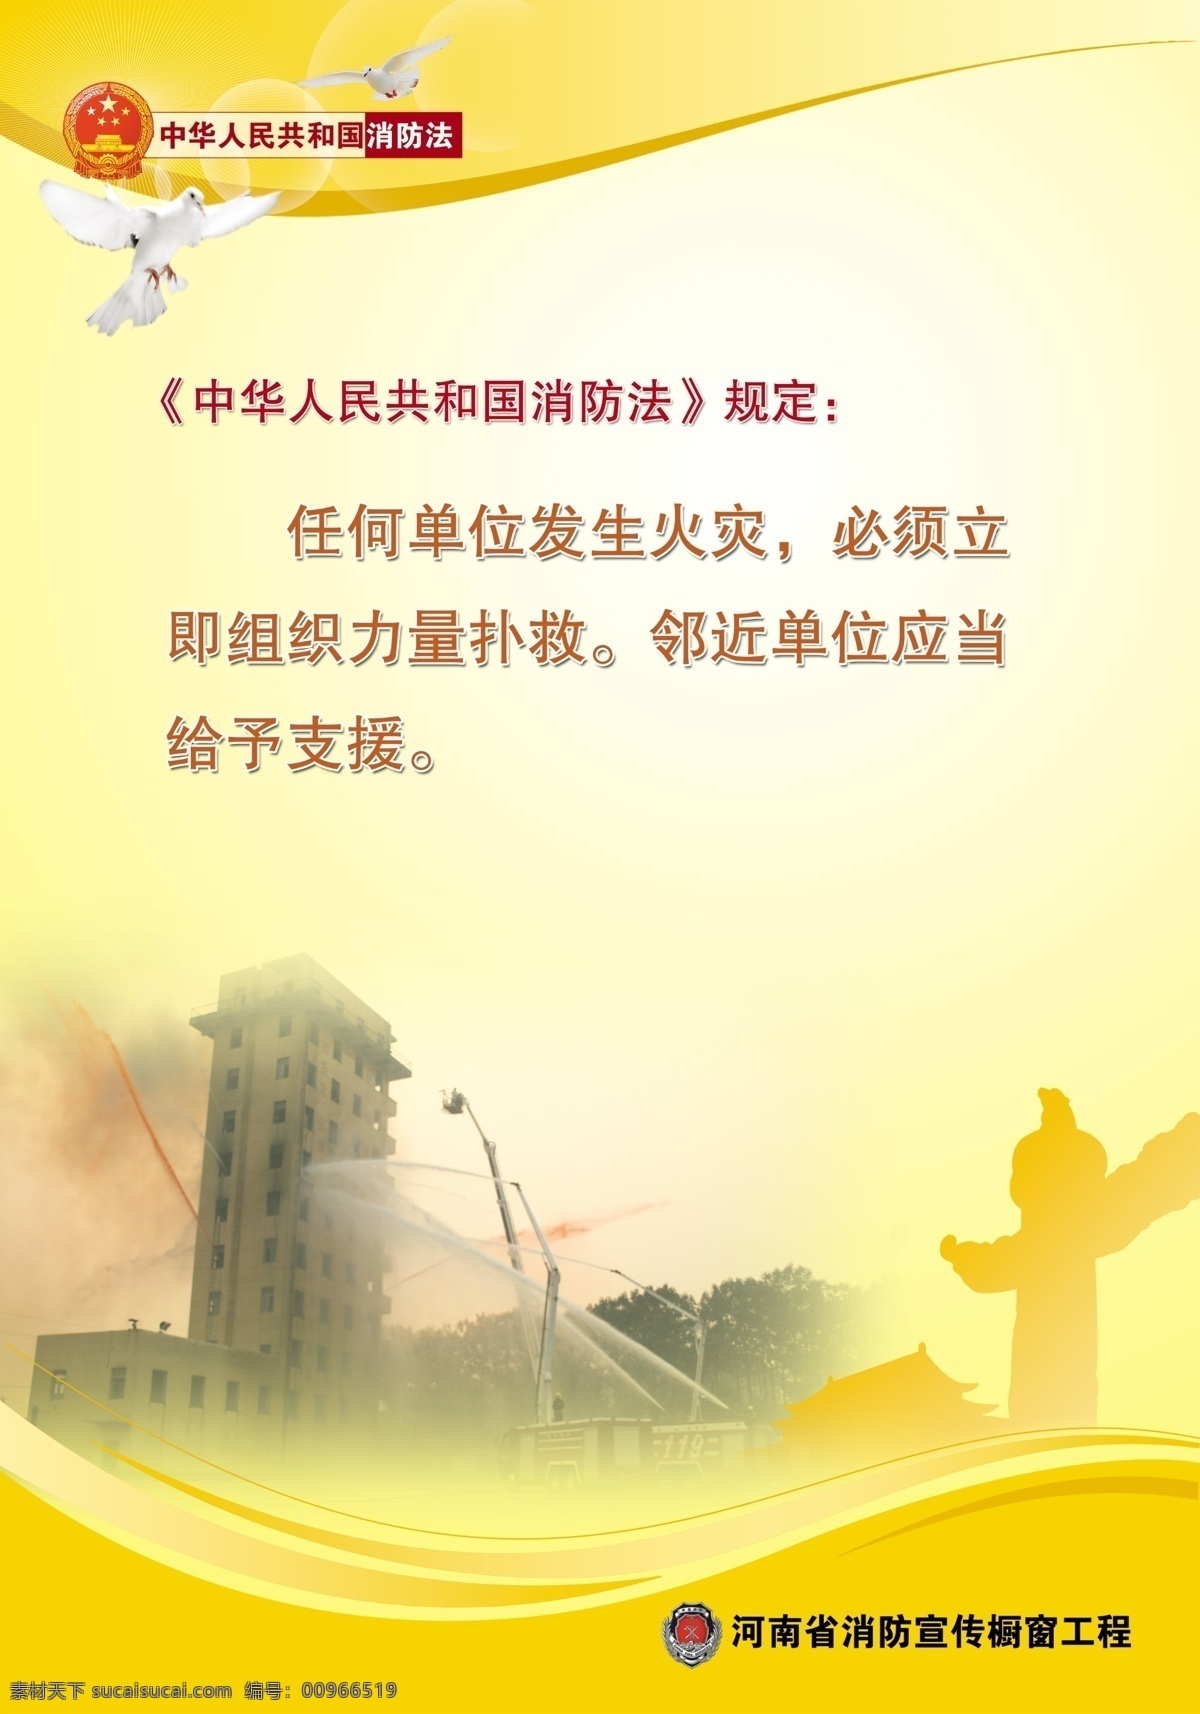 消防宣传 竖 中国消防法 河南 橱窗 工程 幽舷佬鞔肮 家居装饰素材 展示设计